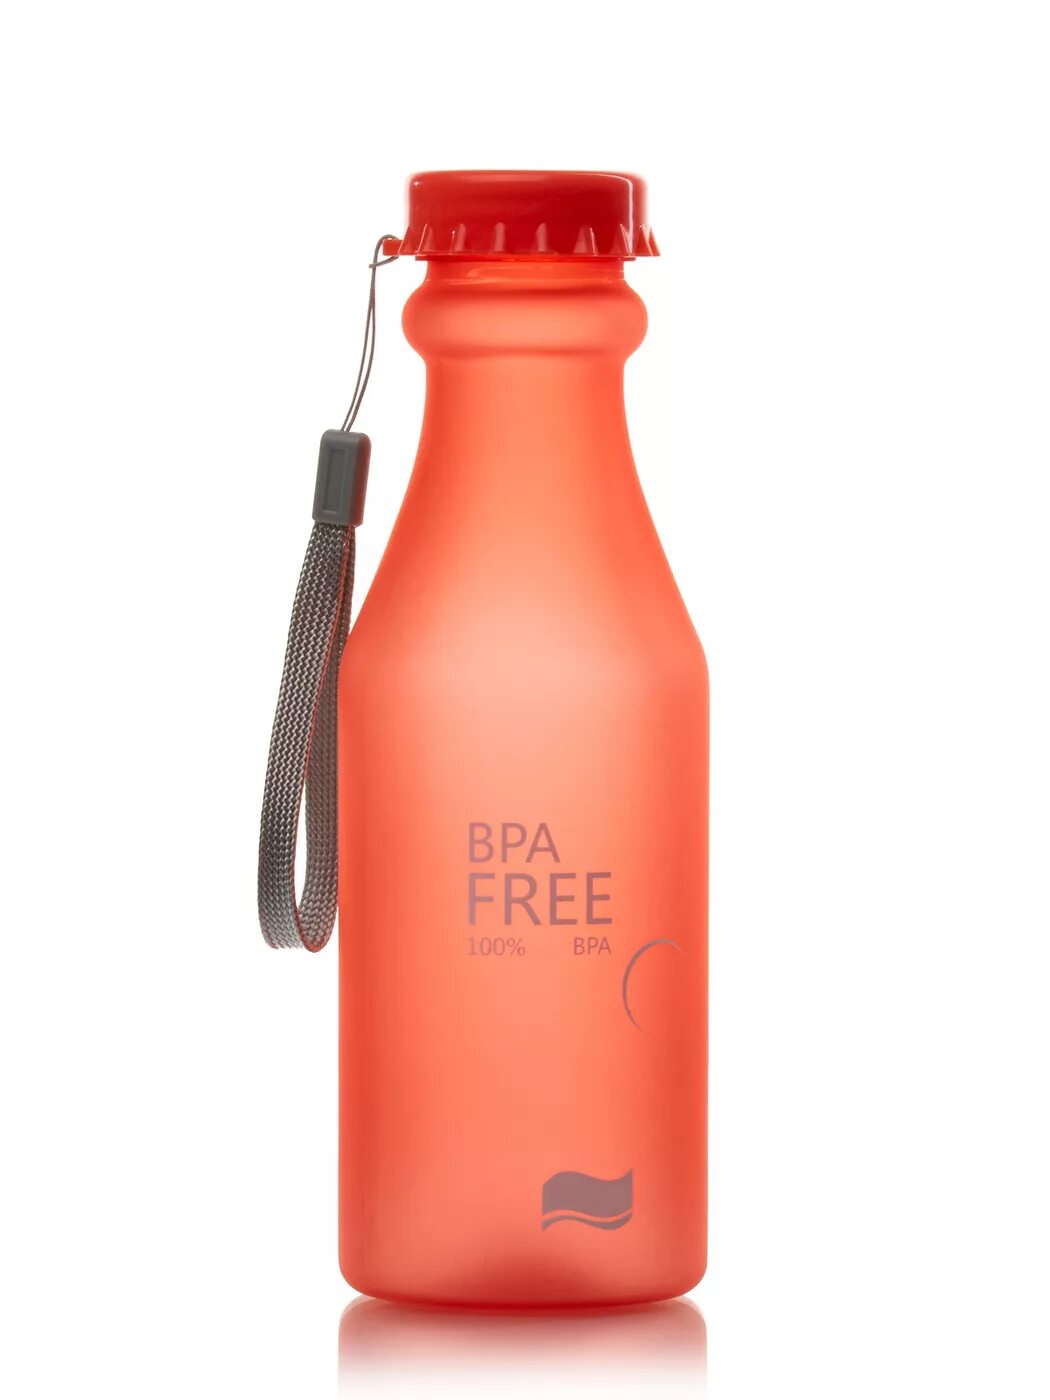 Бутылка для воды Blender Bottle спортивная велосипедная Halex. Красная бутылка купить